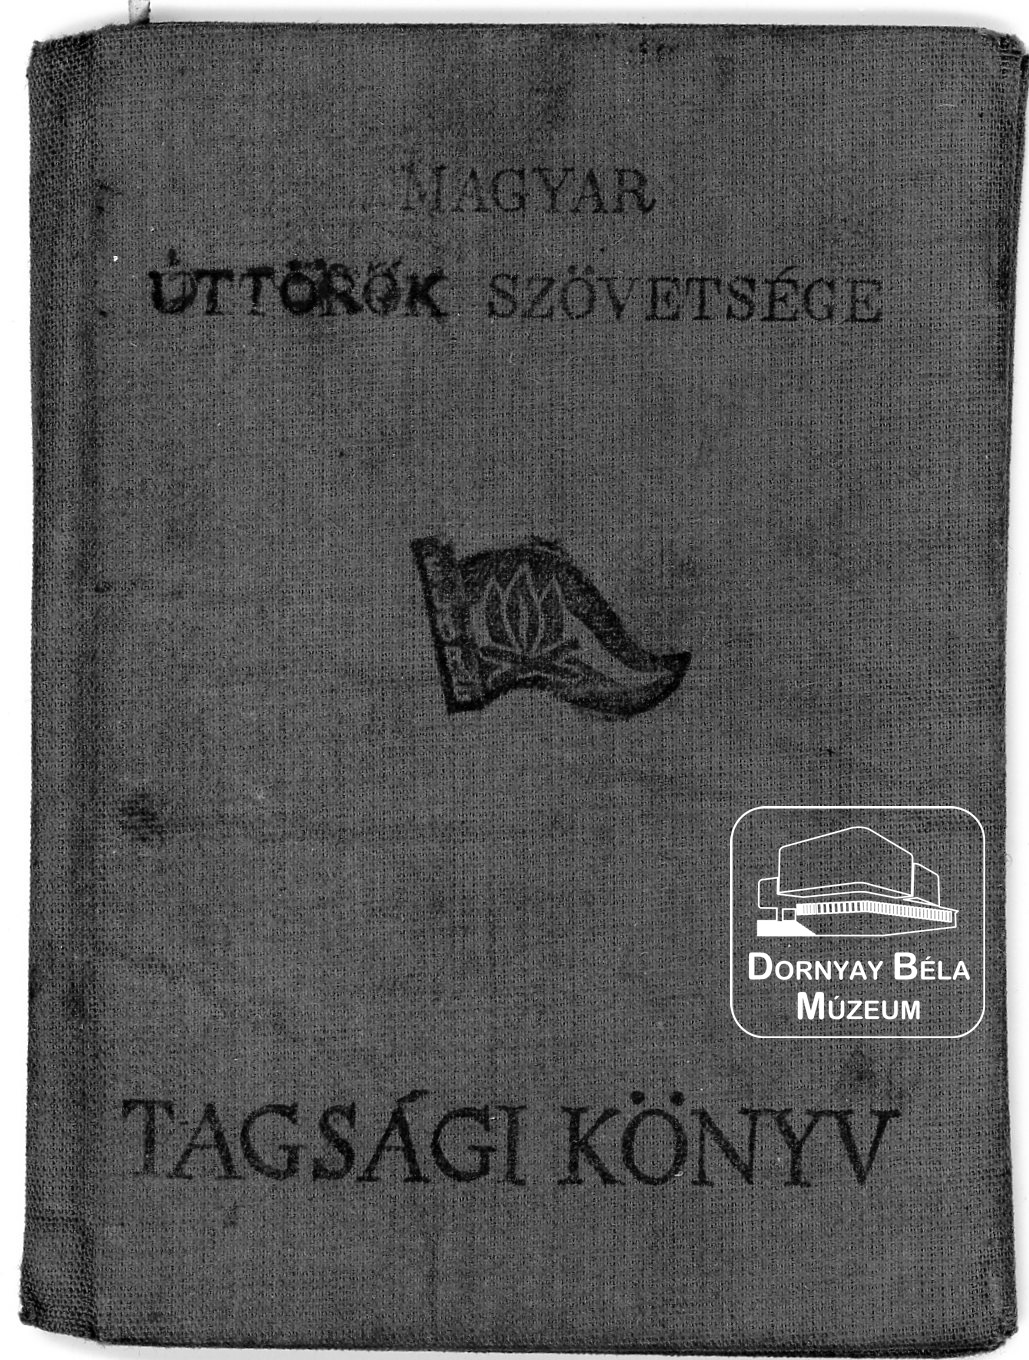 Buda László úttörő tagsági könyve (Dornyay Béla Múzeum, Salgótarján CC BY-NC-SA)